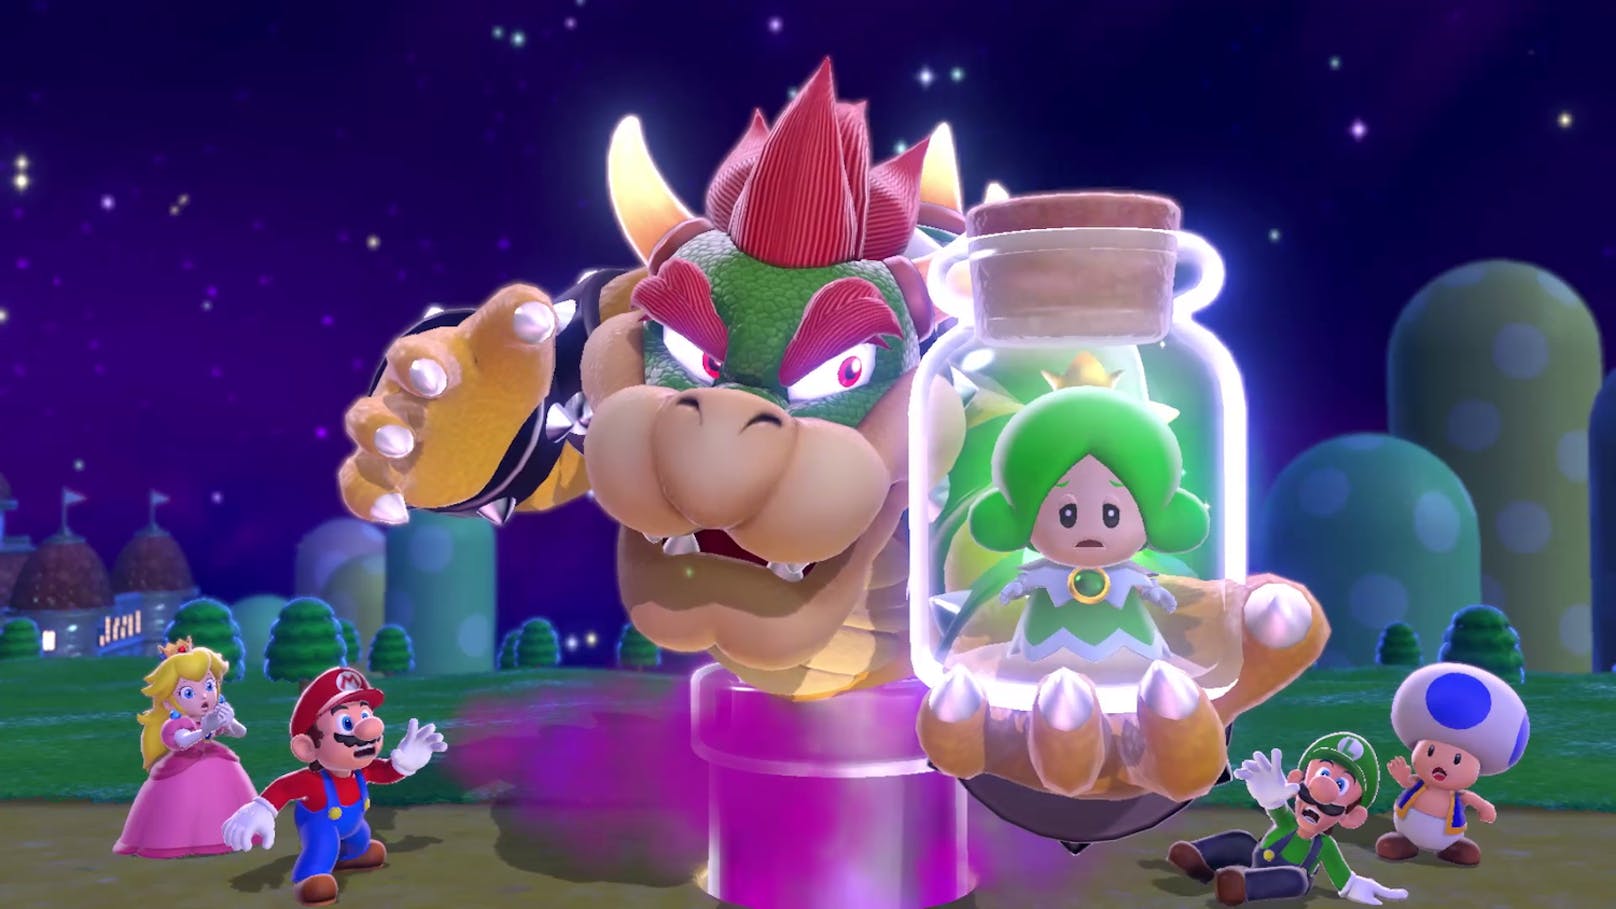 Die Powerups nehmen auch in diesem Mario-Game eine große Rolle ein. Am wichtigsten ist wohl die Glocke, mit der sich Mario, Luigi, Peach oder Toad in ihre Katzenform verwandeln.